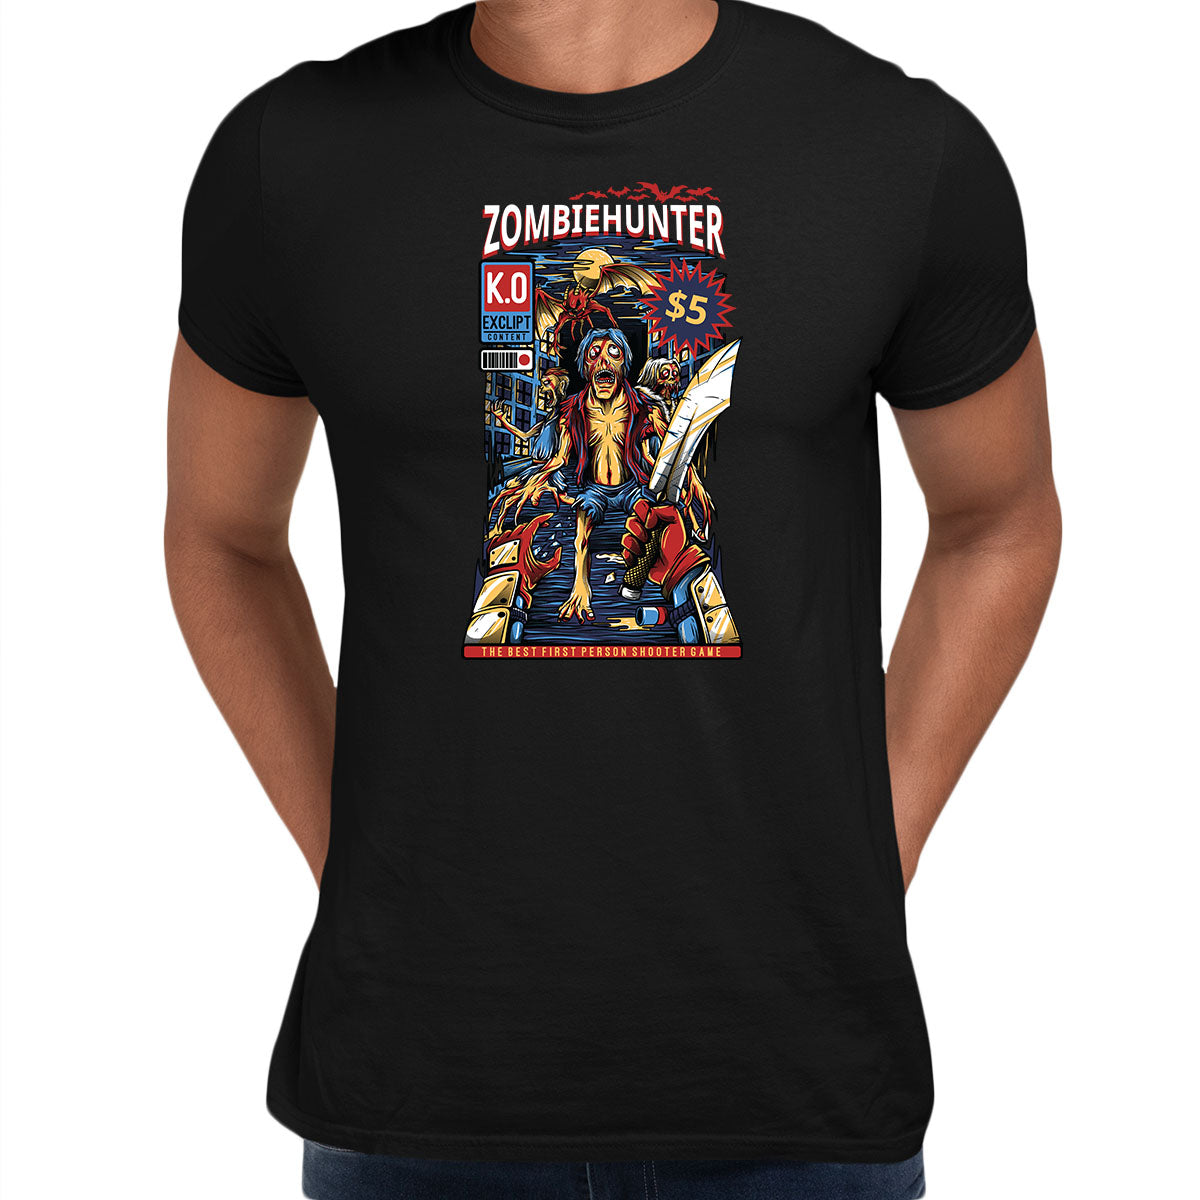 Zombiehunter - Retro Halloween Shooter Game Unisex T-shirt - Kuzi Tees